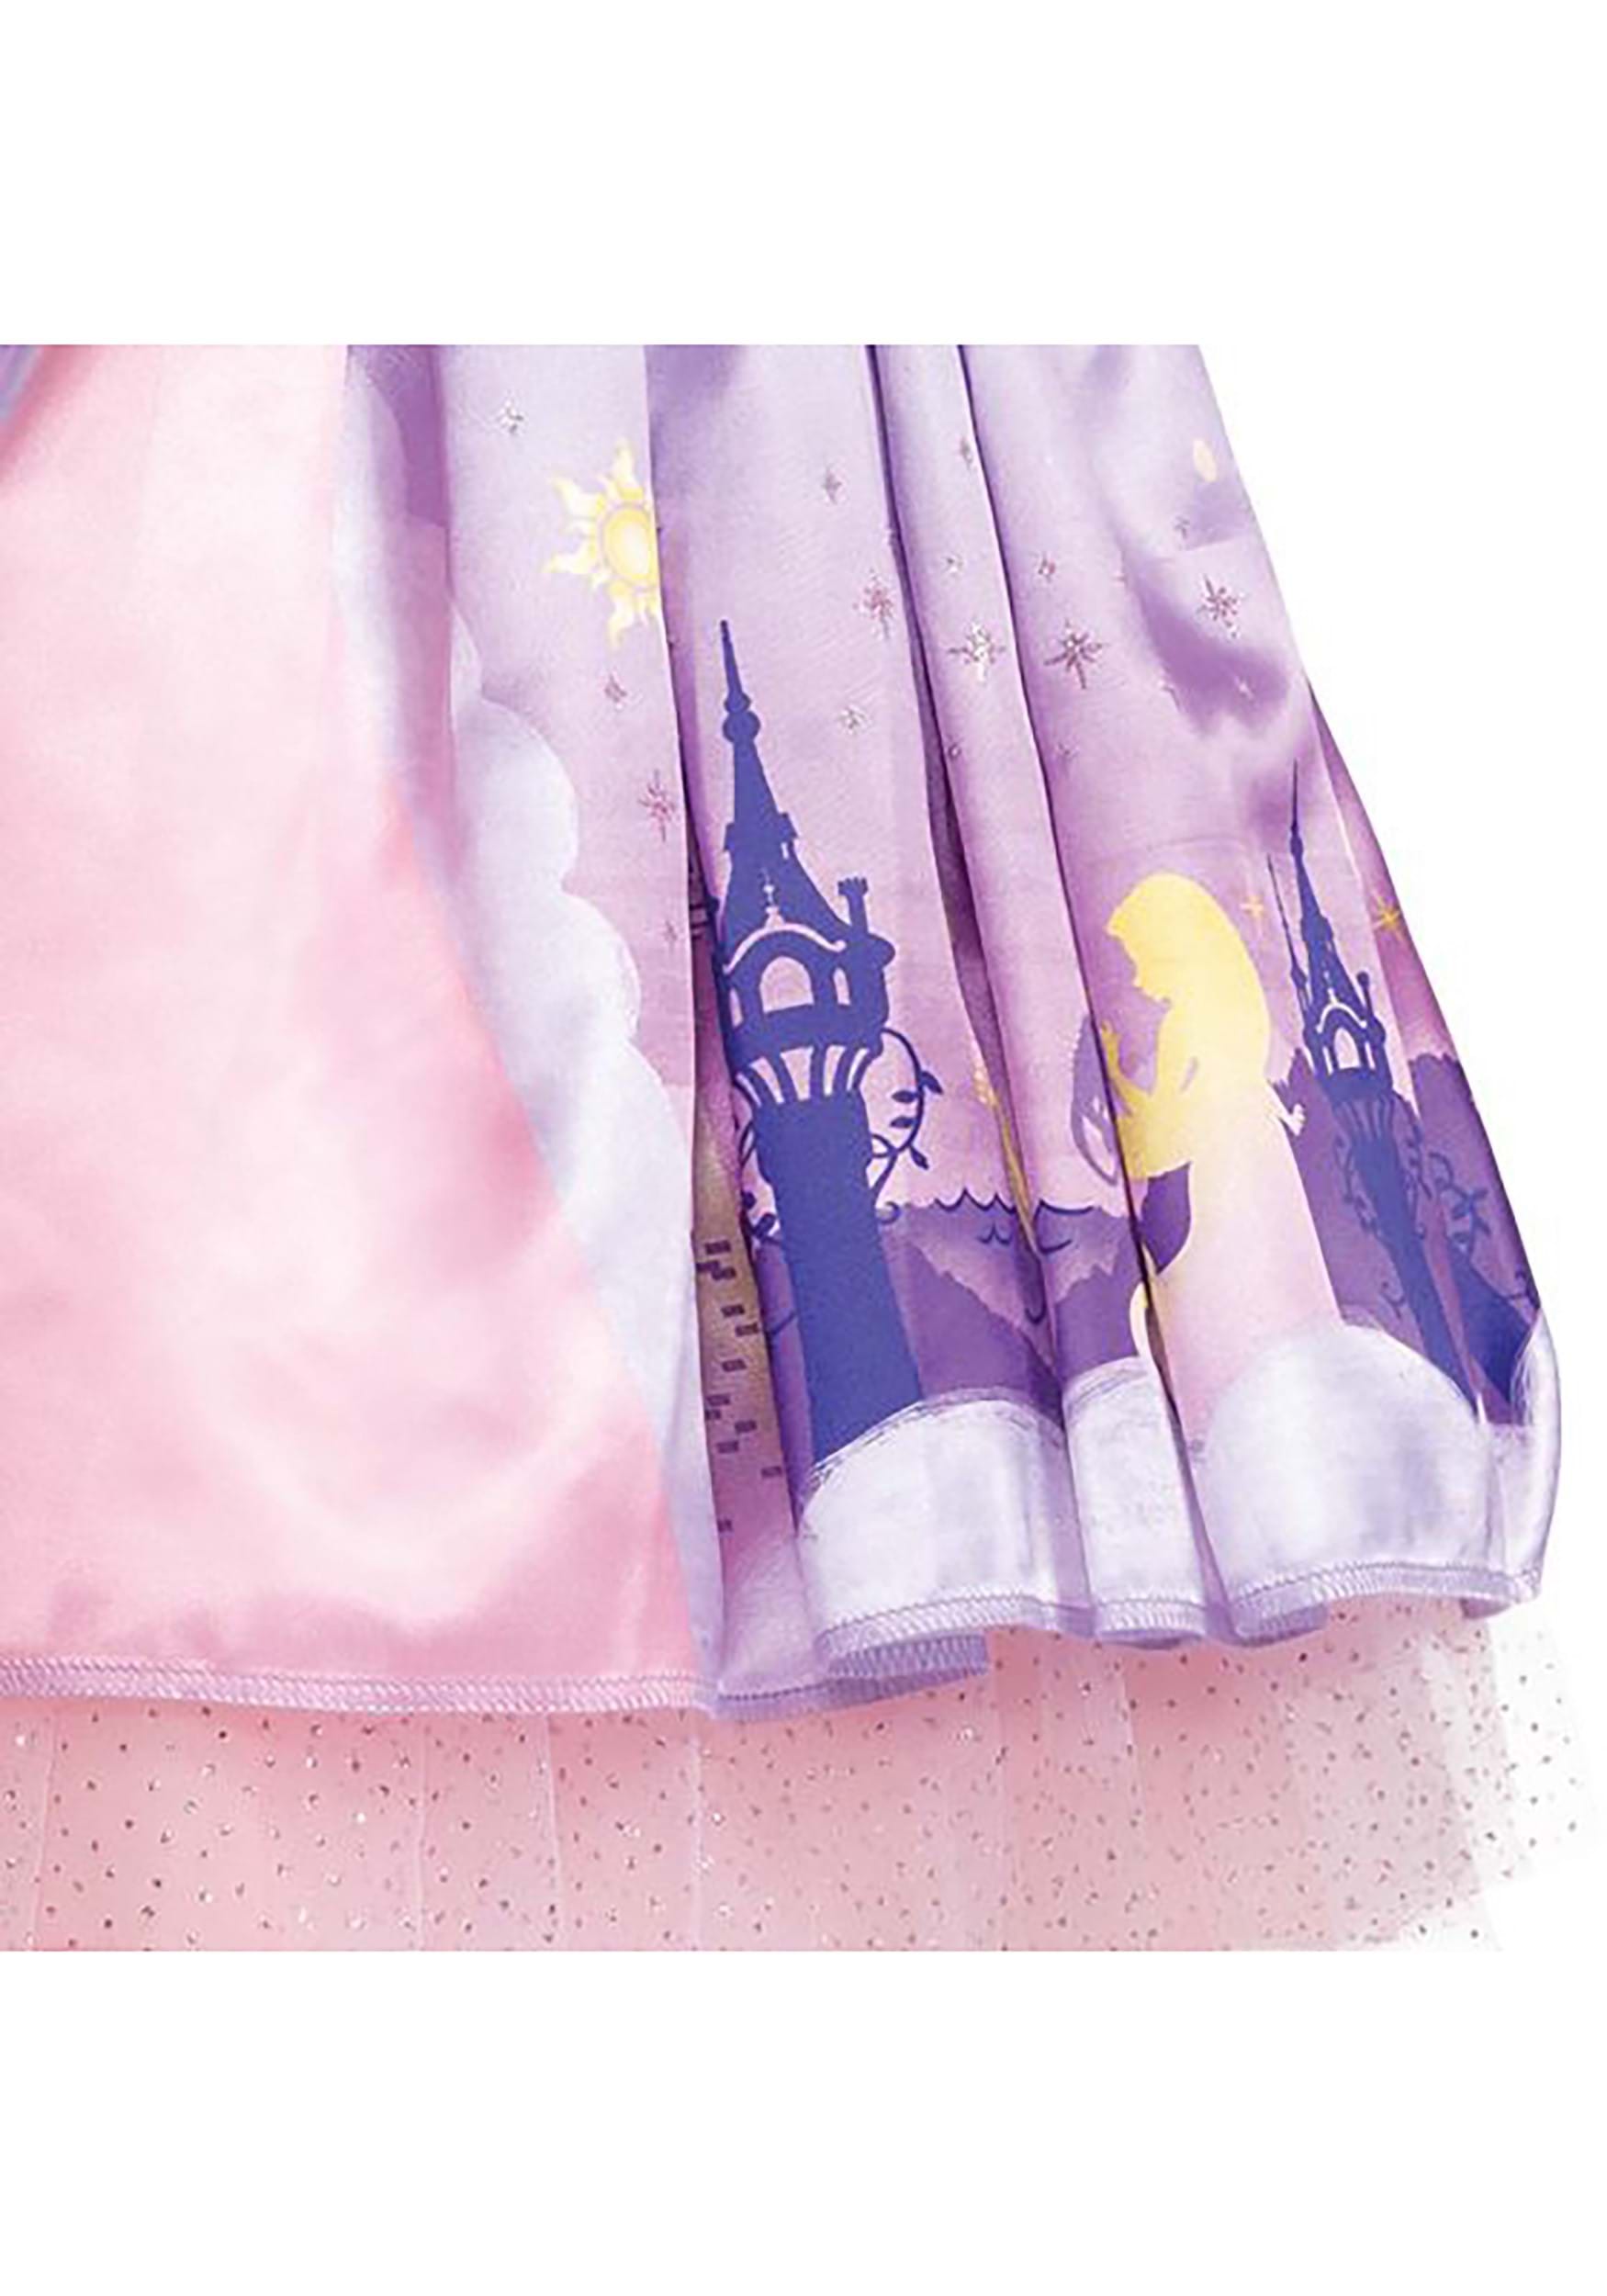 Tangled Deluxe Girl's Toddler Repunzel Costume